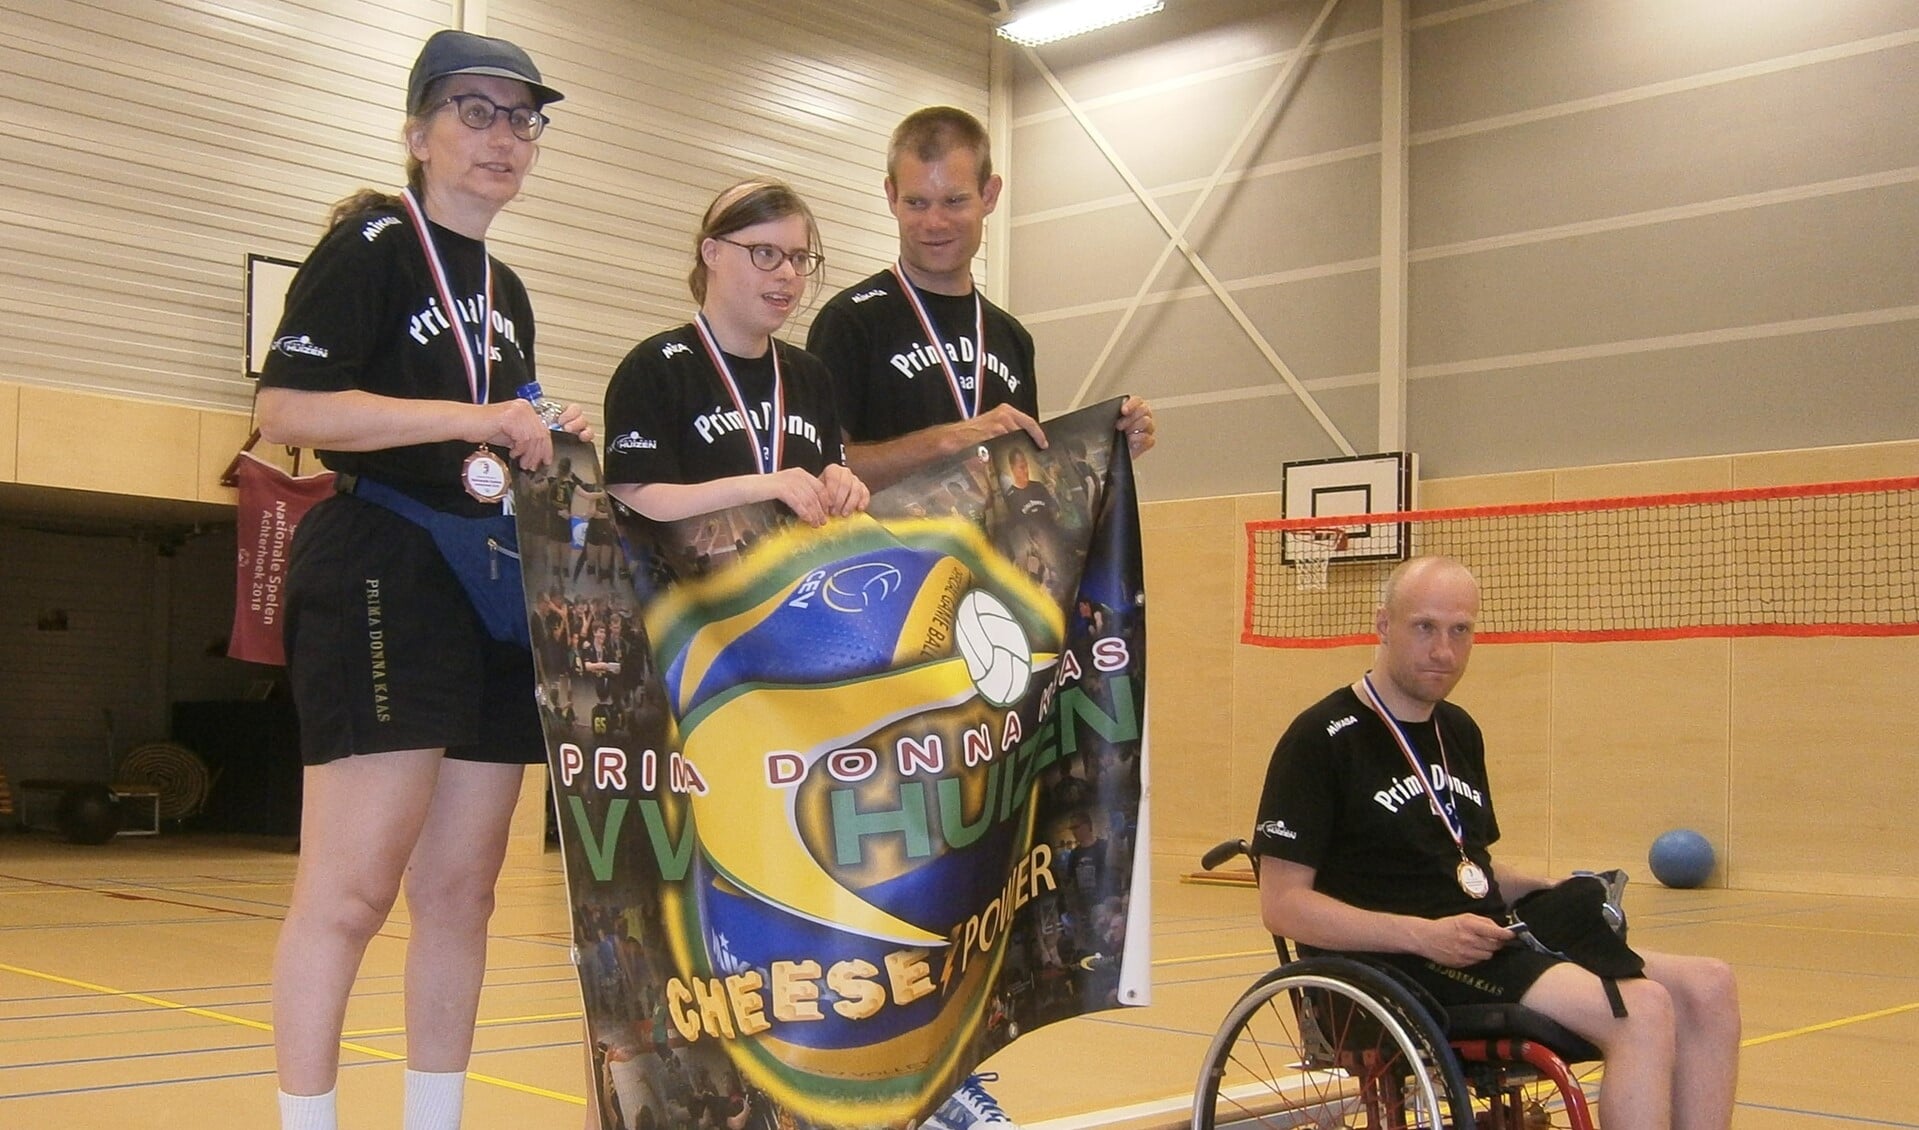 De winnaars van het brons bij de Special Olympics.